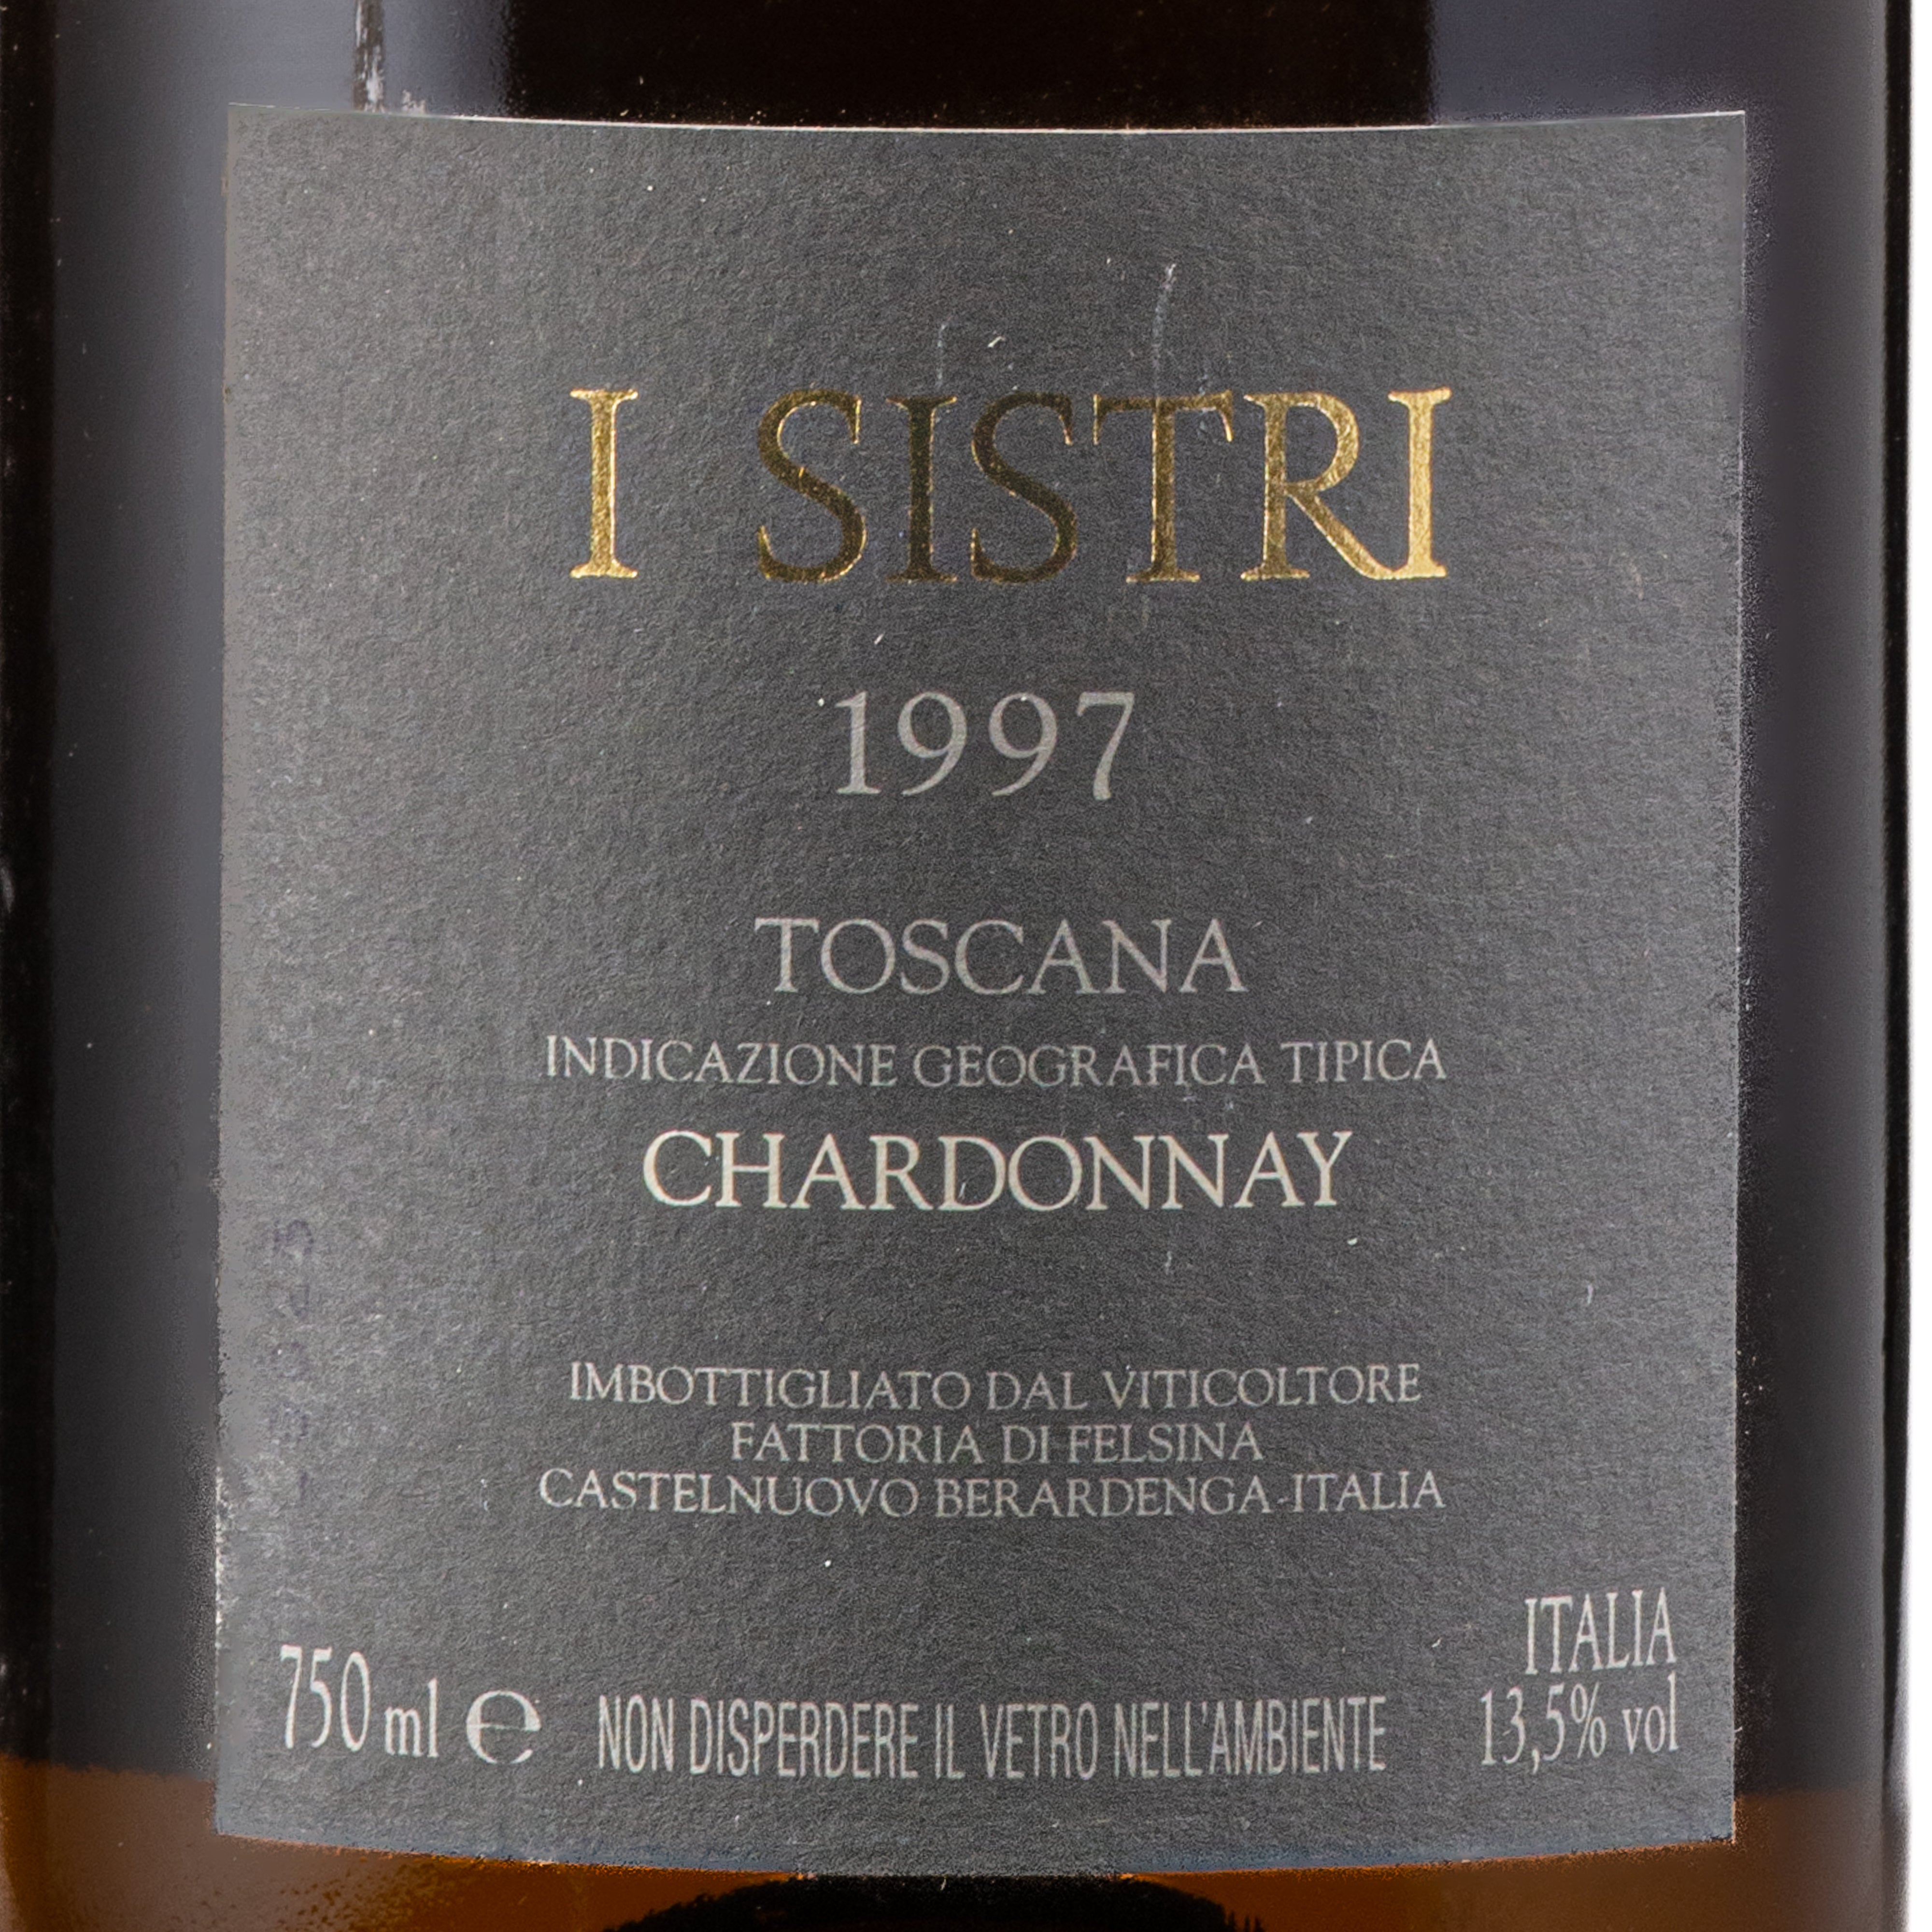 i Sistri 1997 igt Toscana Felsina lt.0.750